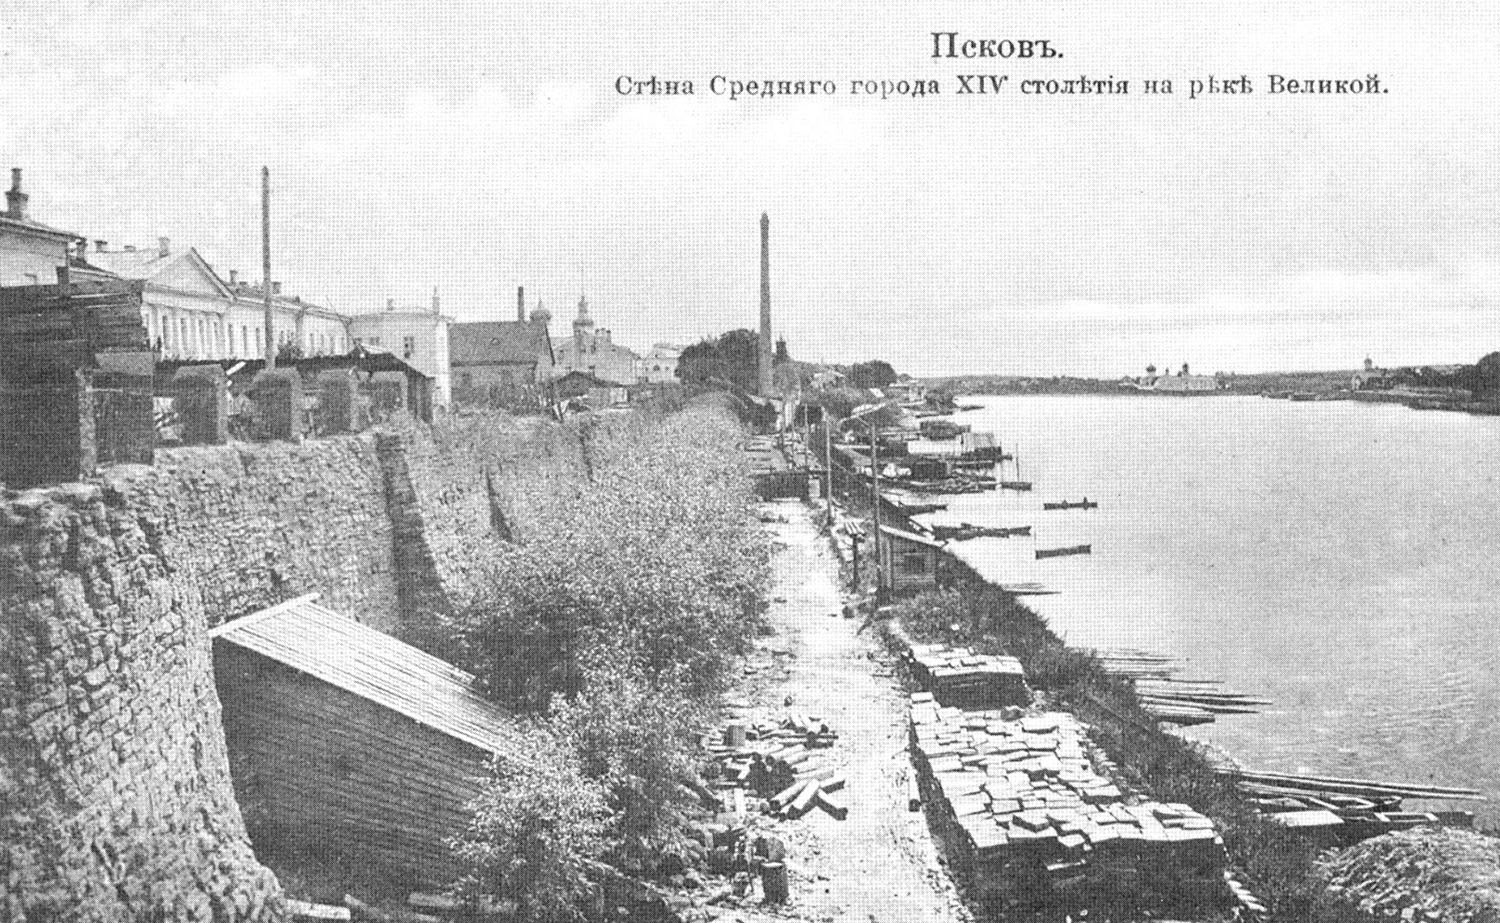 Псков. Стена Среднего города XIV столетия на реке Великой.